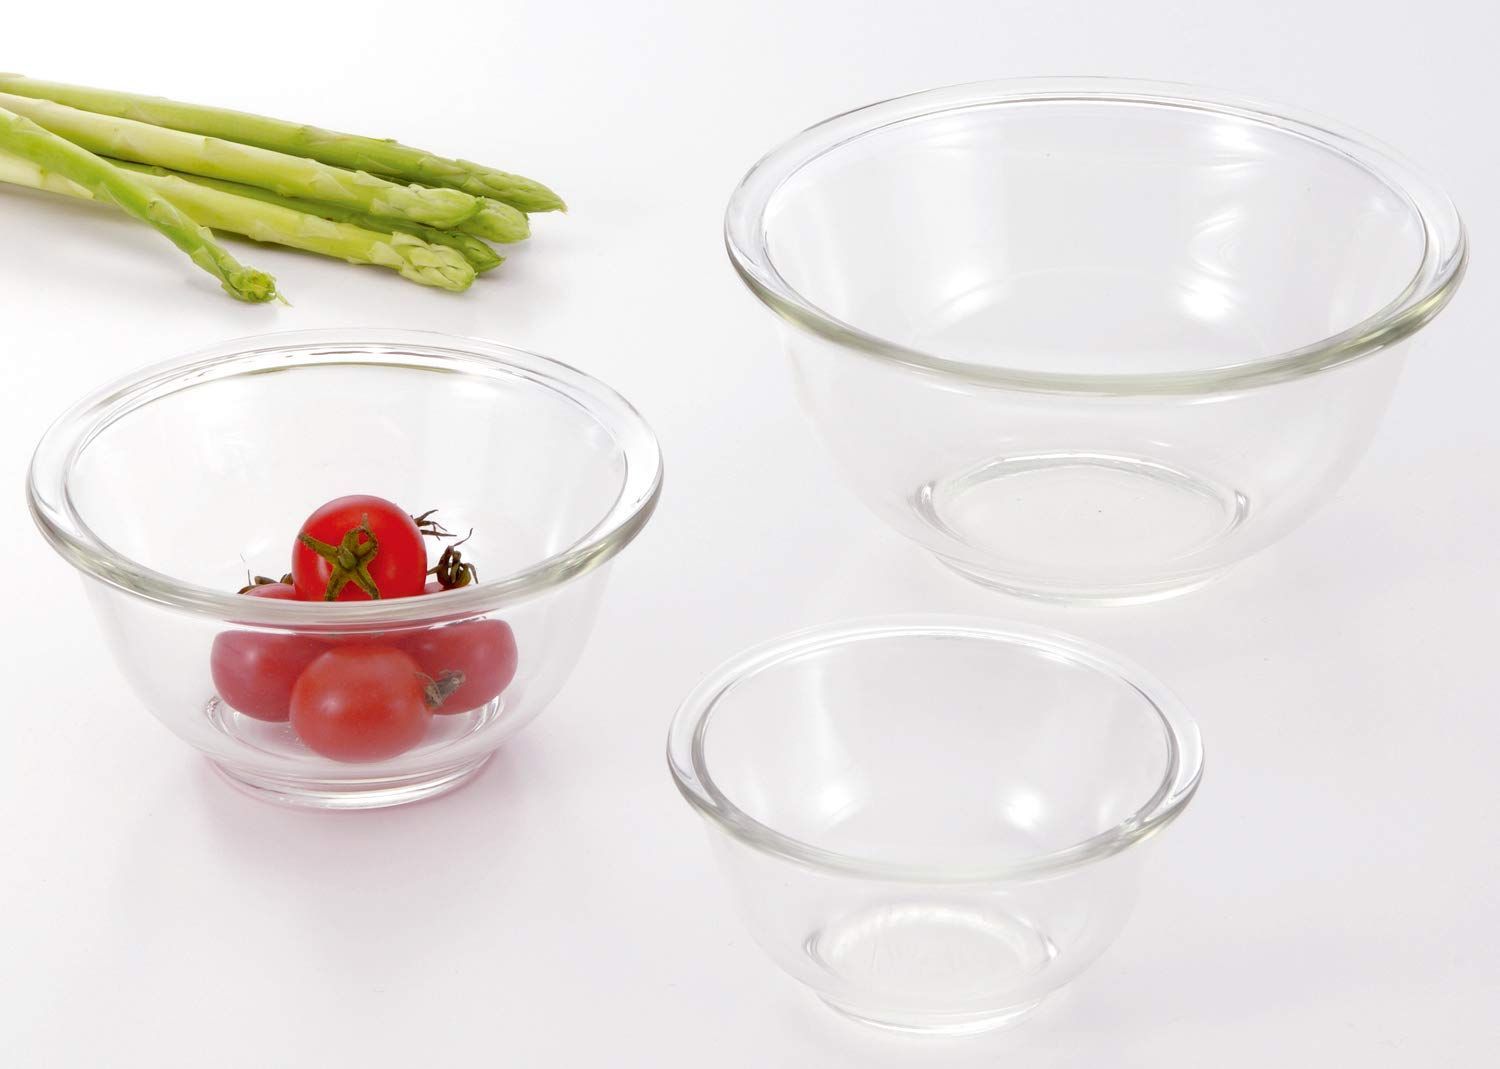 捧呈 送料無料 iwaki イワキ AGCテクノグラス 耐熱ガラス ボウル 丸型 3点セット 電子レンジ オーブン 食洗器対応 食材を混ぜやすい広口デ 